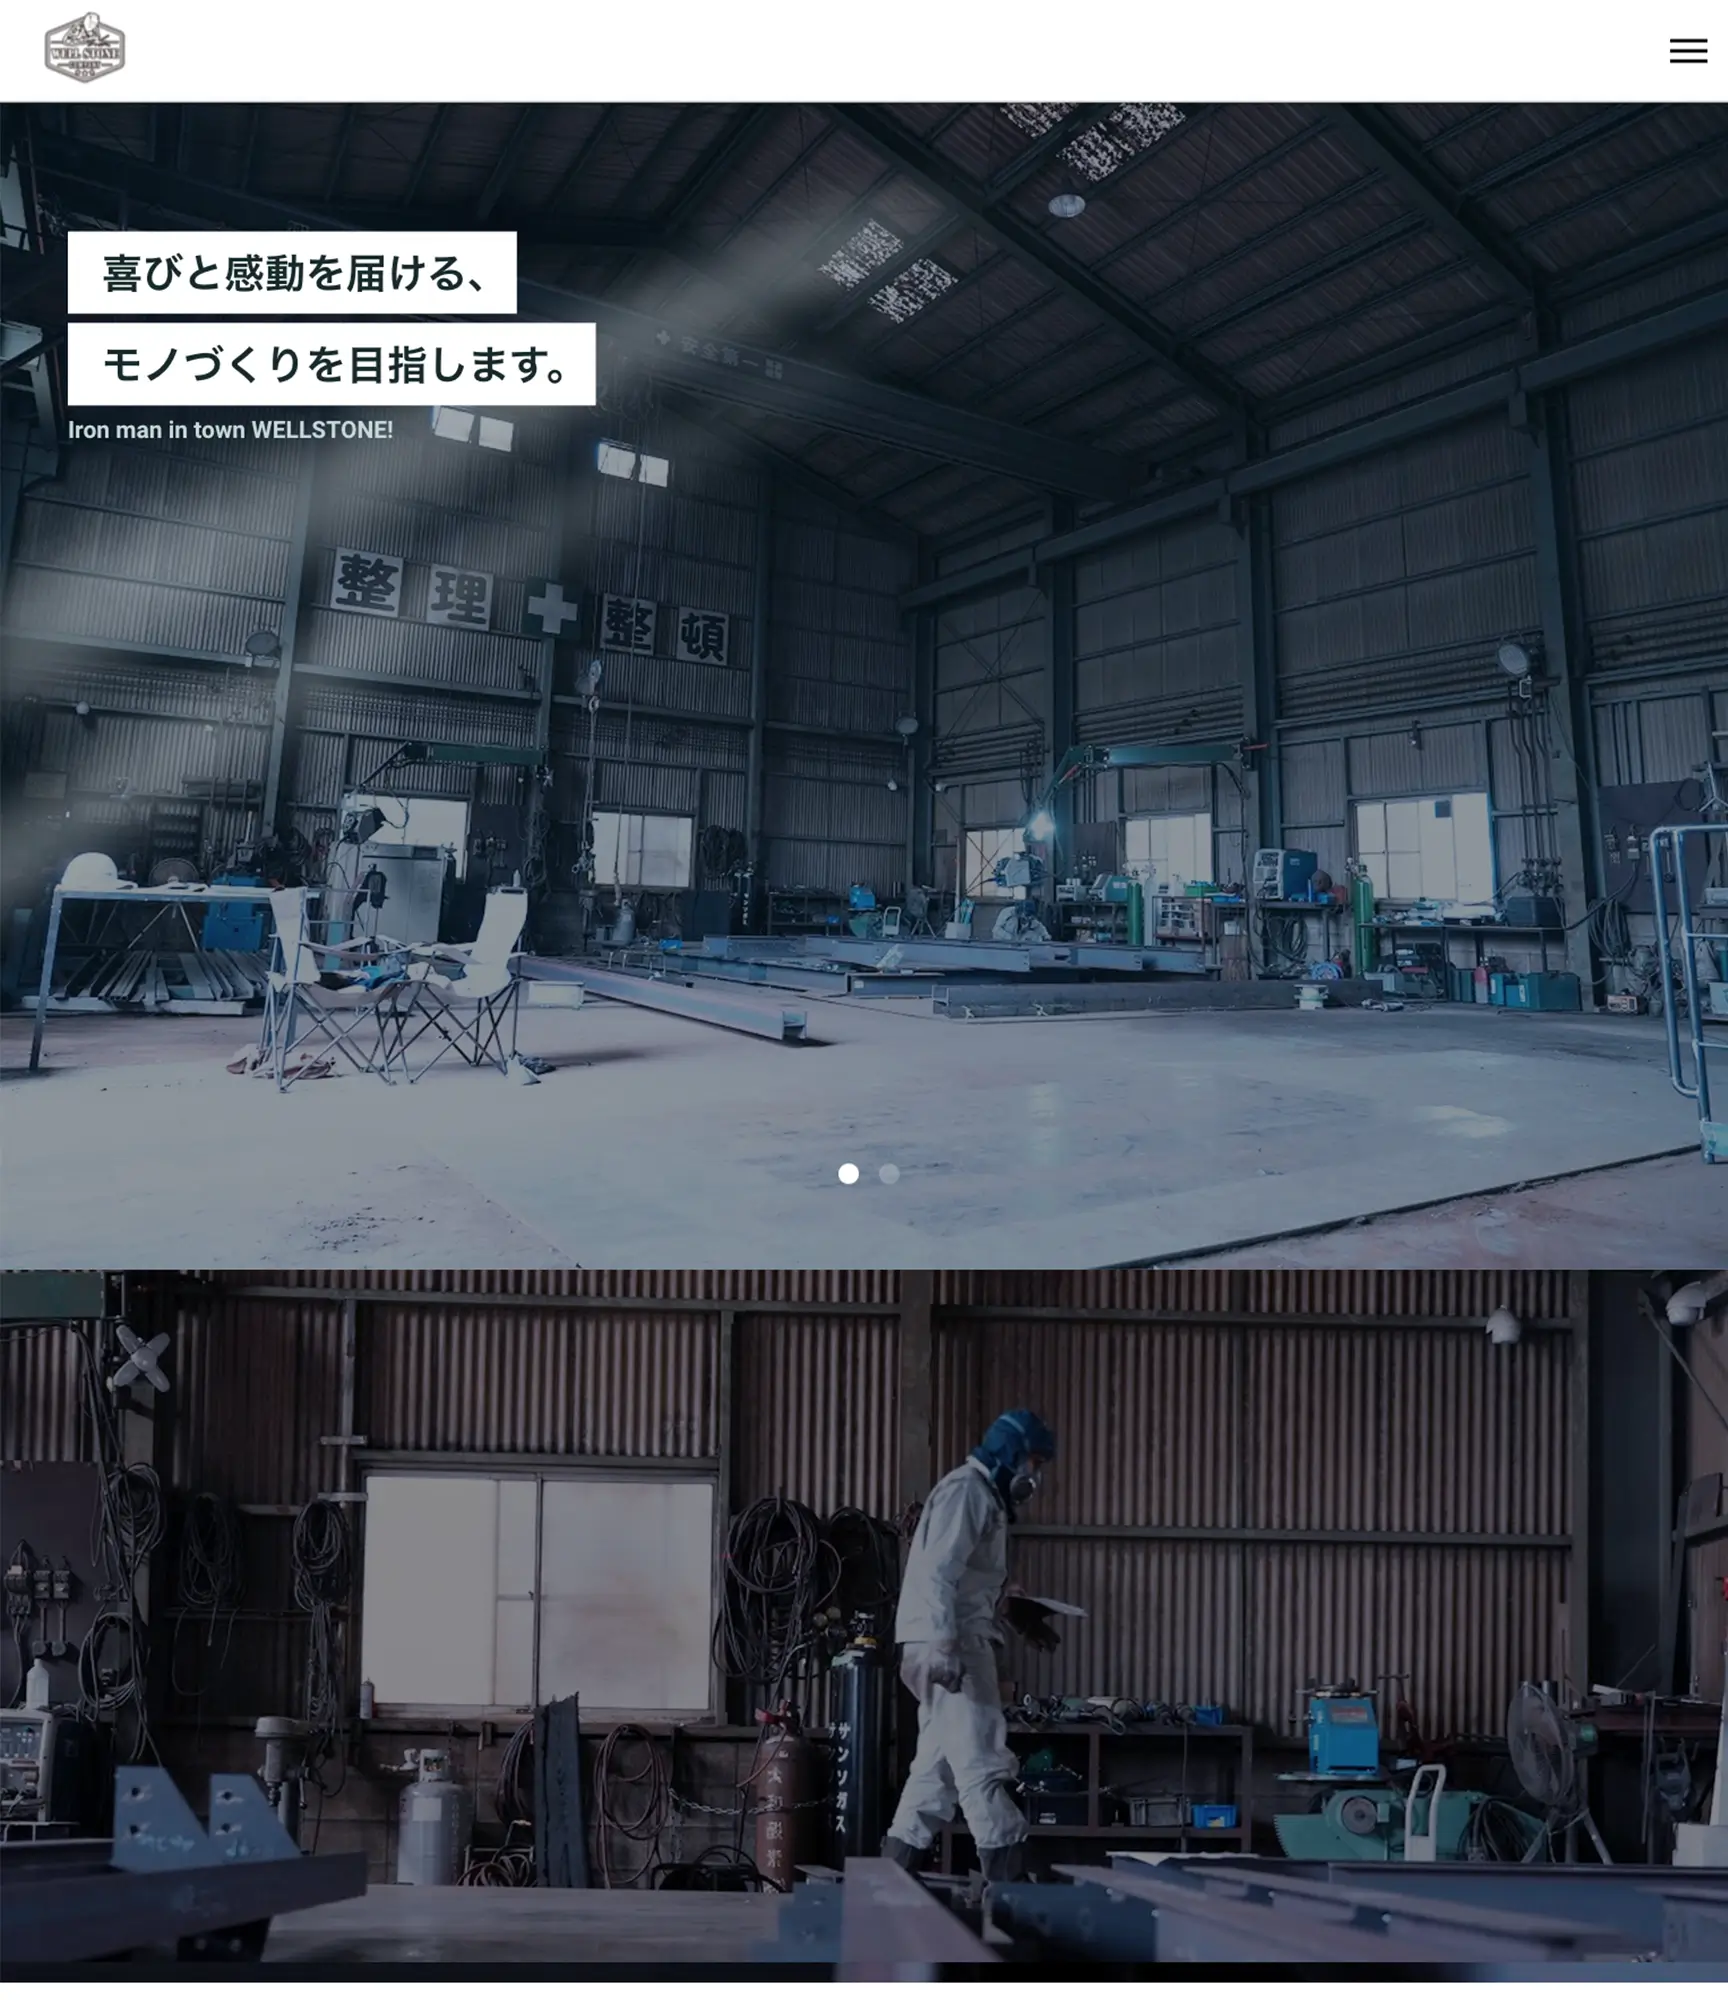 株式会社ウェルストンの工場内の様子が映されたwebサイトのトップ画面